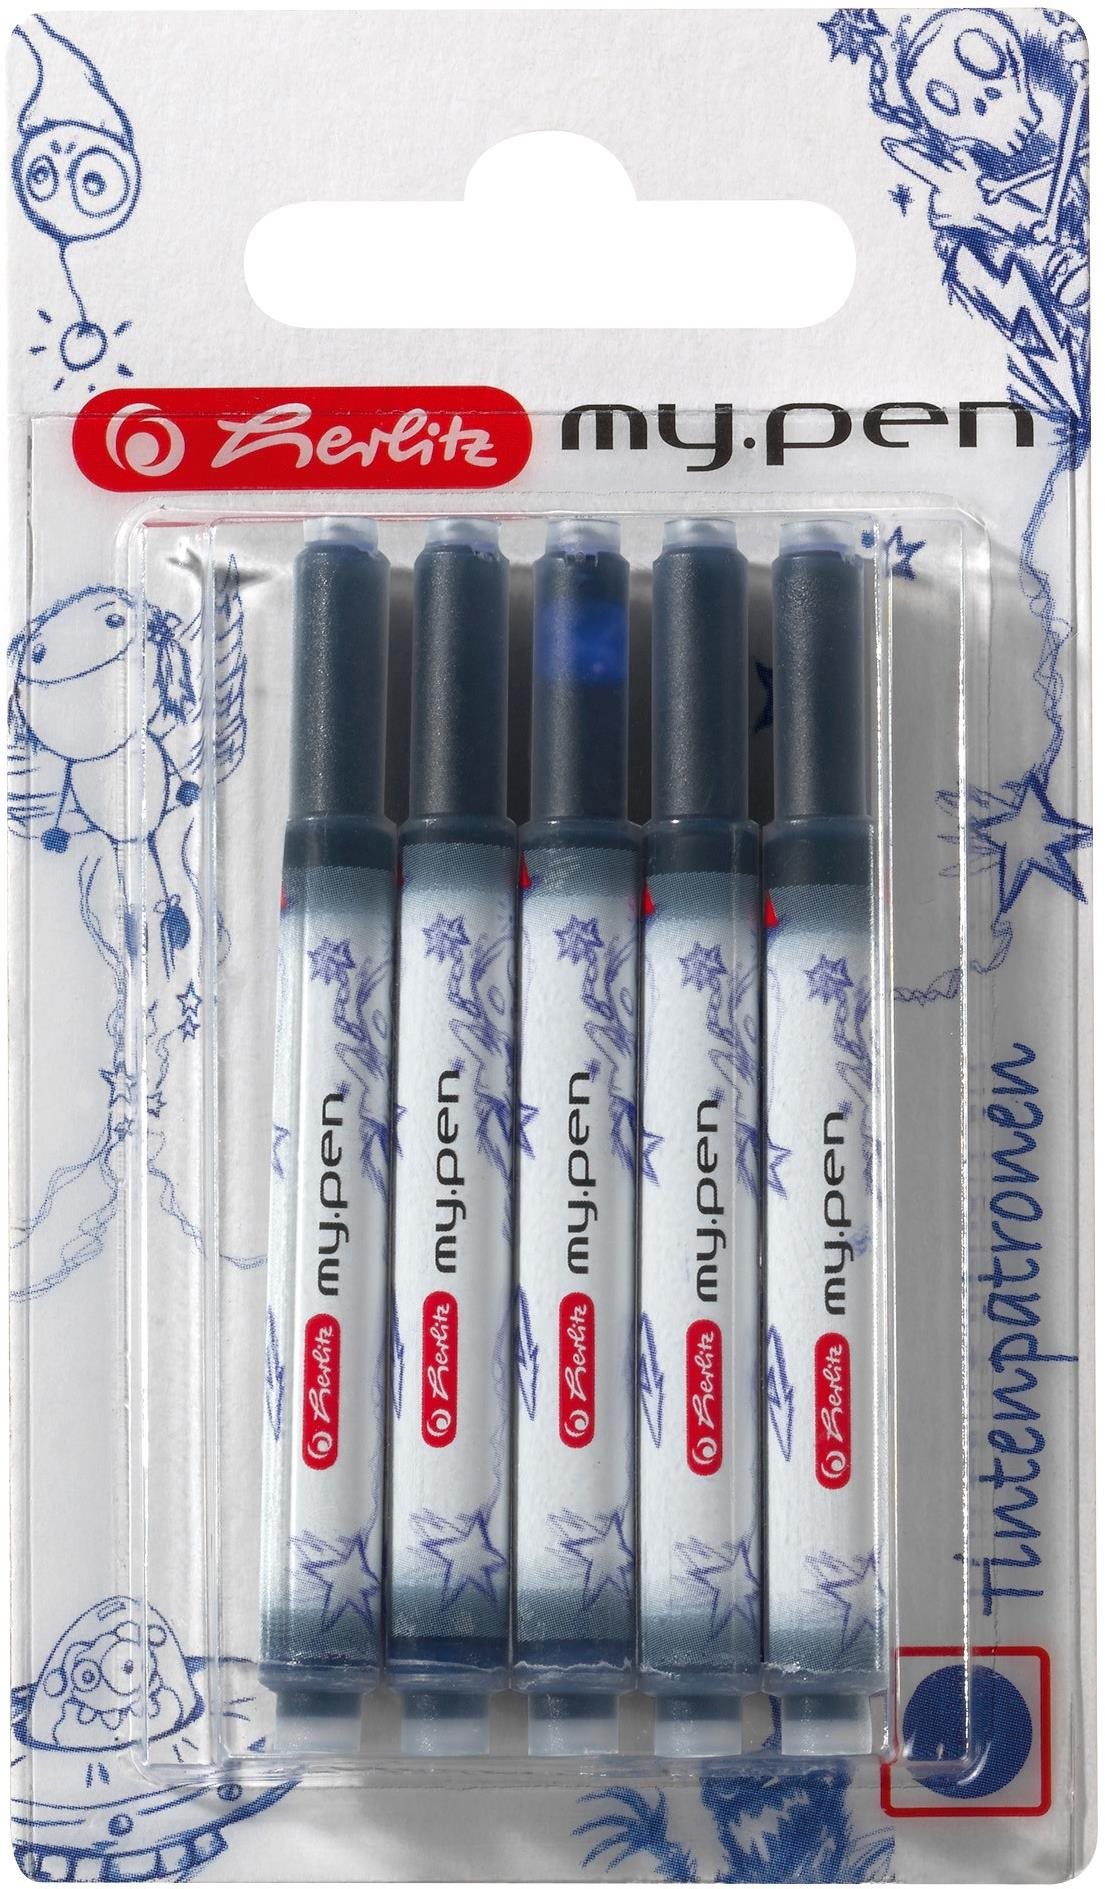 HERLITZ my. pen tintapatron, kék - 5 darabos kiszerelés